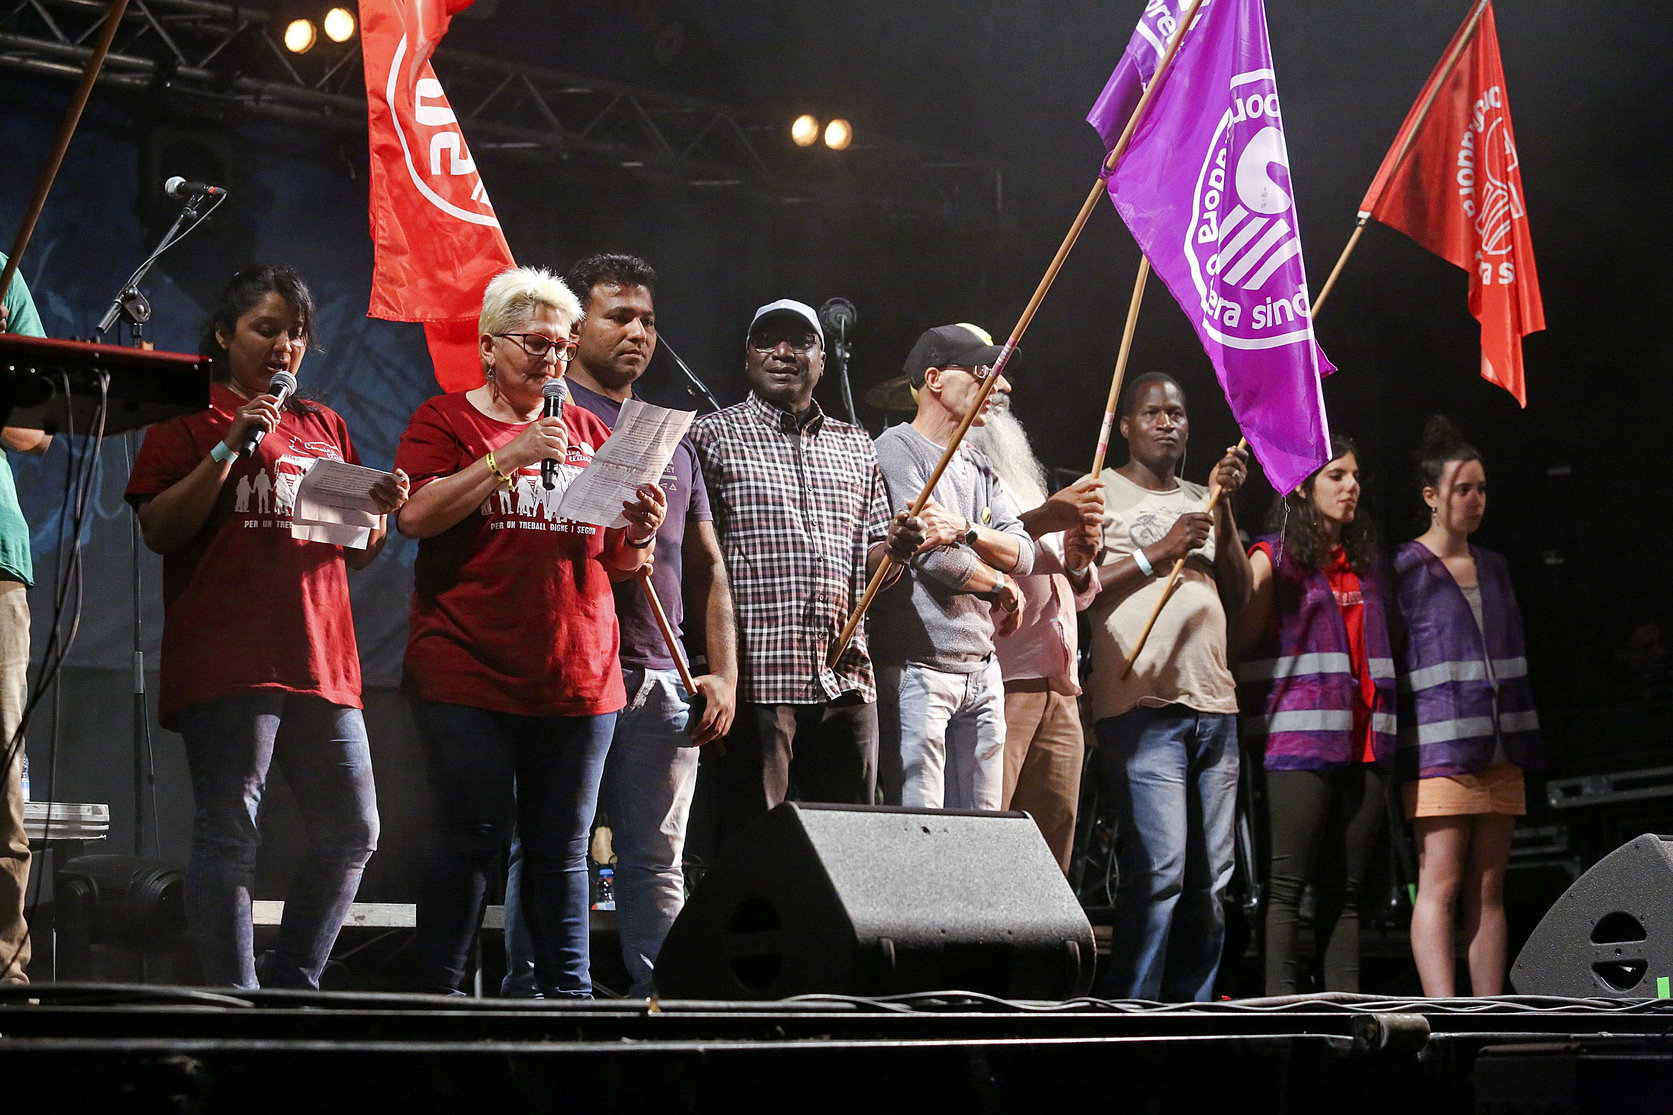 Càrnies en Lluita va organitzar fa unes setmanes un concert per recaptar fons pels treballadors acomiadats